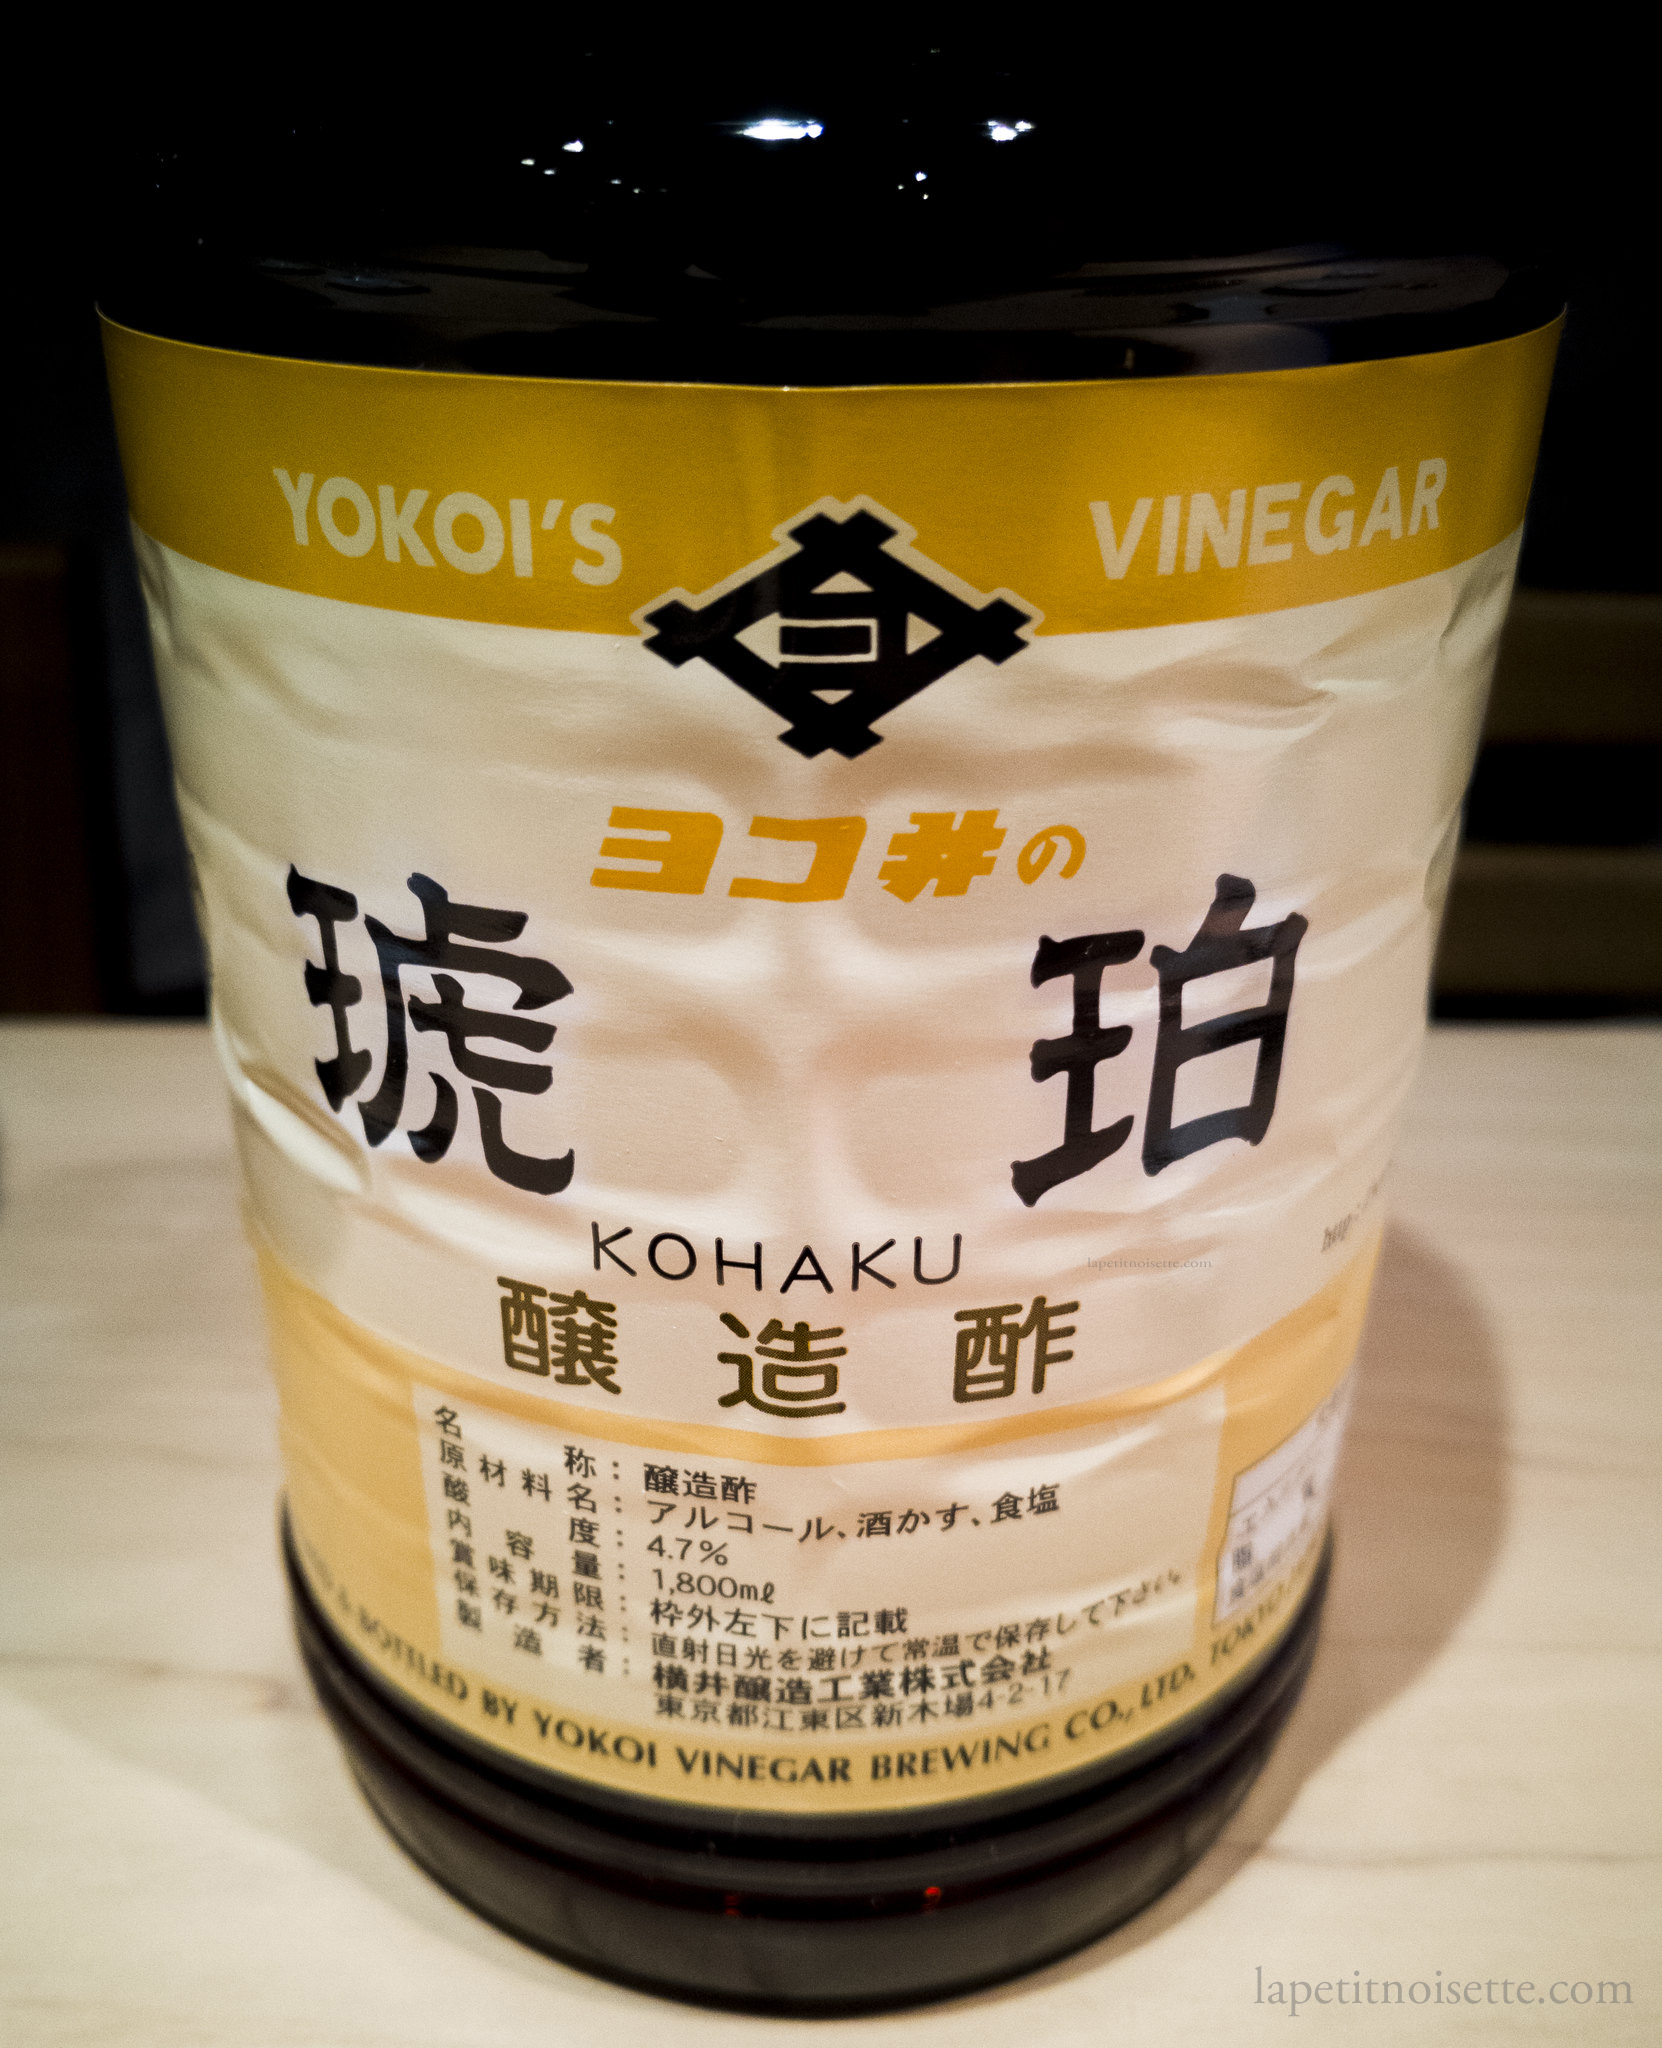 Yokoi's Kohaku Akasu